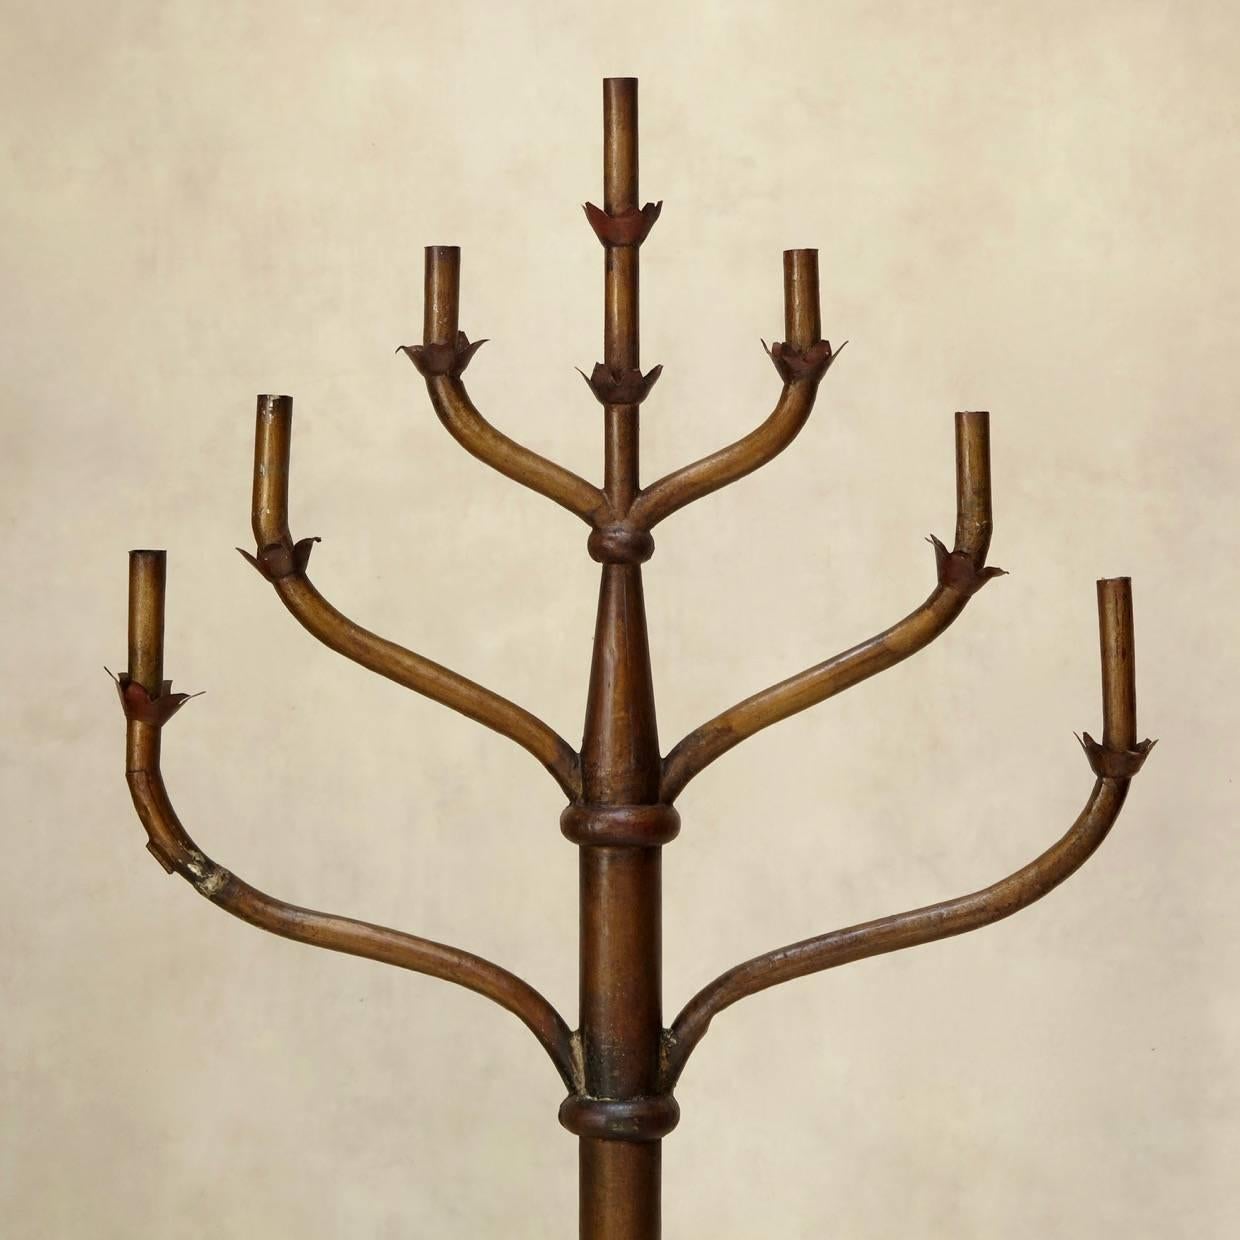 Grand candélabre autoportant de style menorah. La partie inférieure est sculptée dans le bois et le sommet est en étain. Couleur de peinture or antique et bruni.